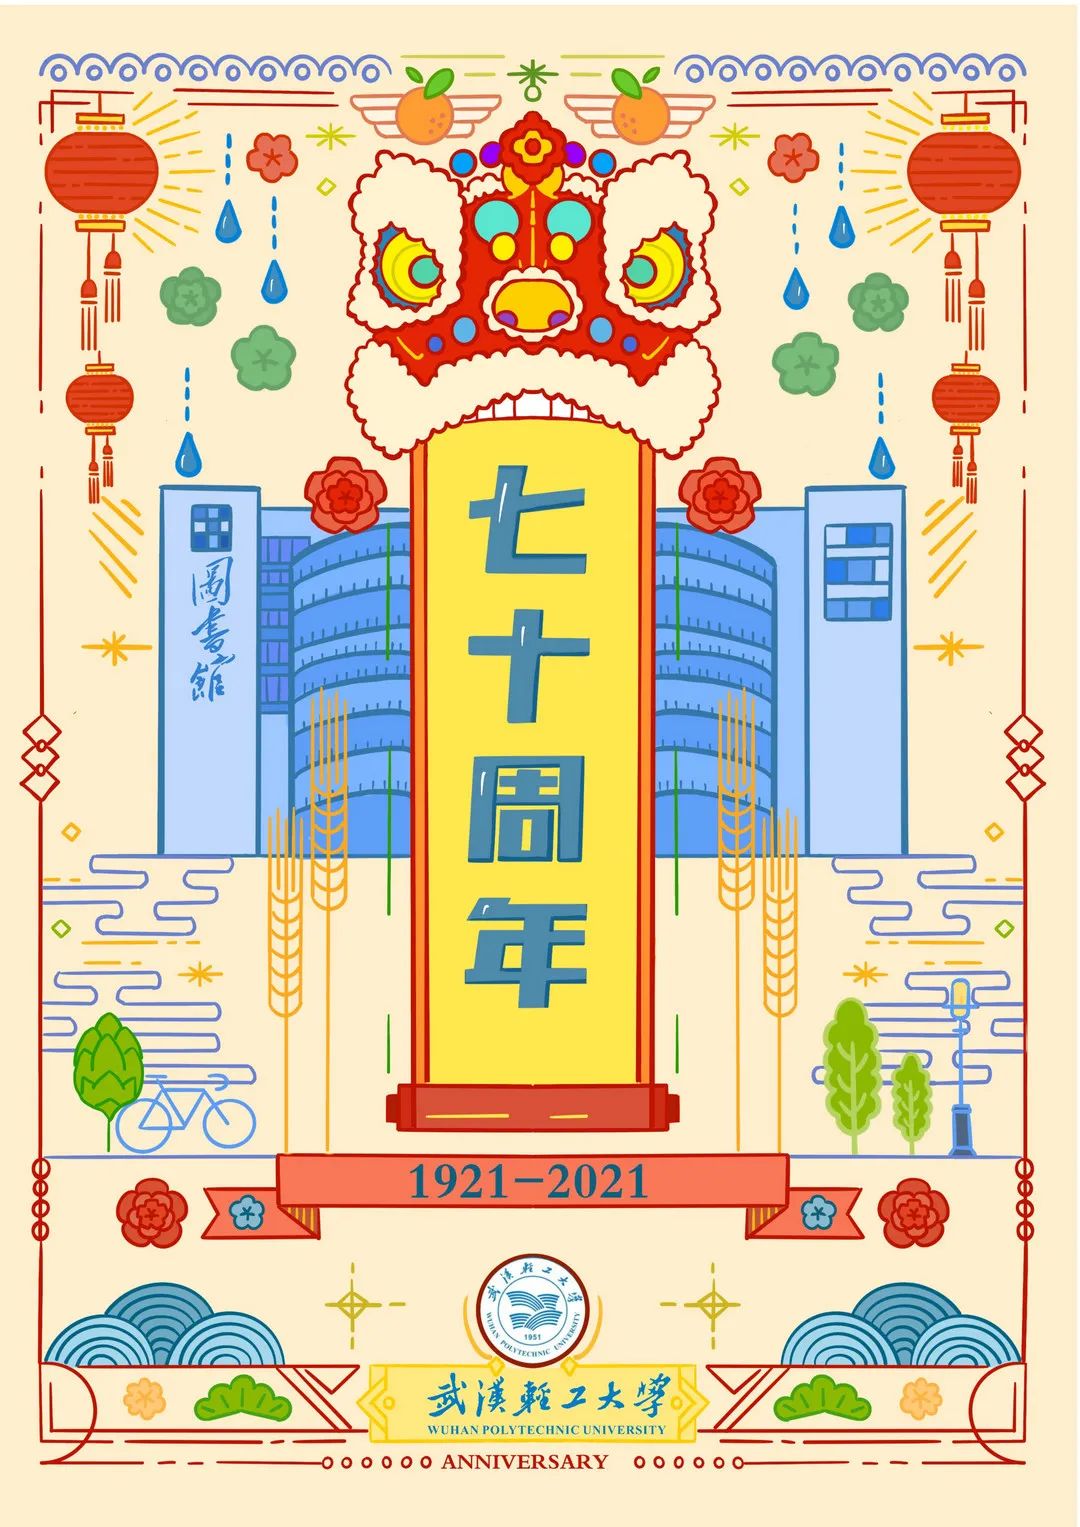 70周年校庆海报手绘图片